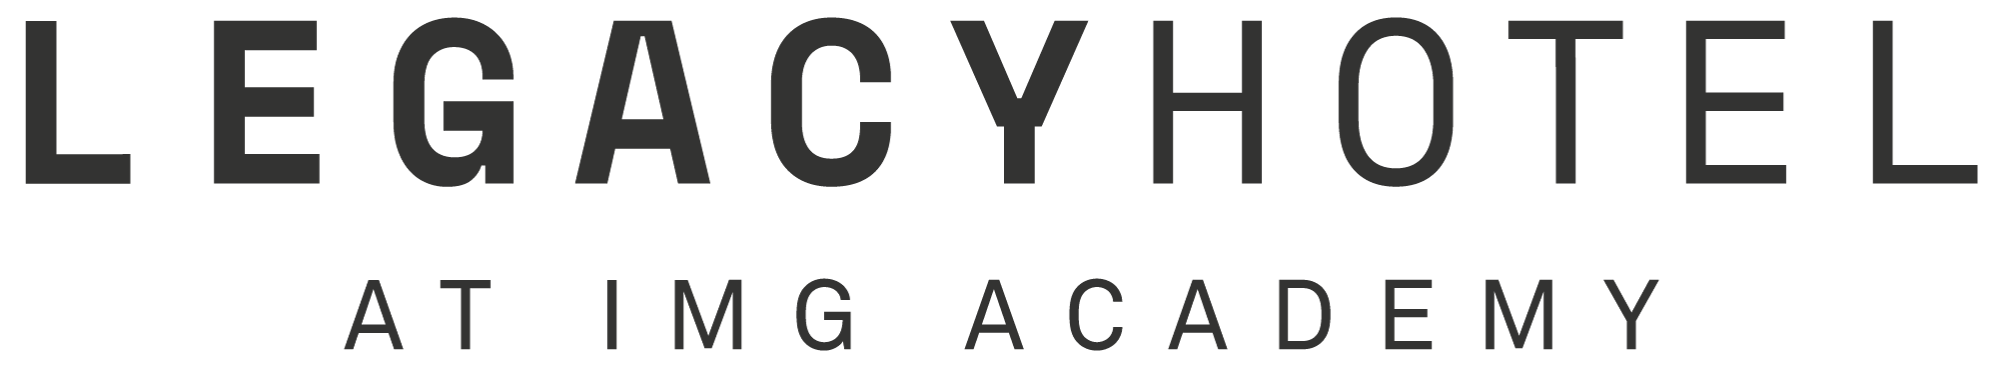 legacy hotel logo